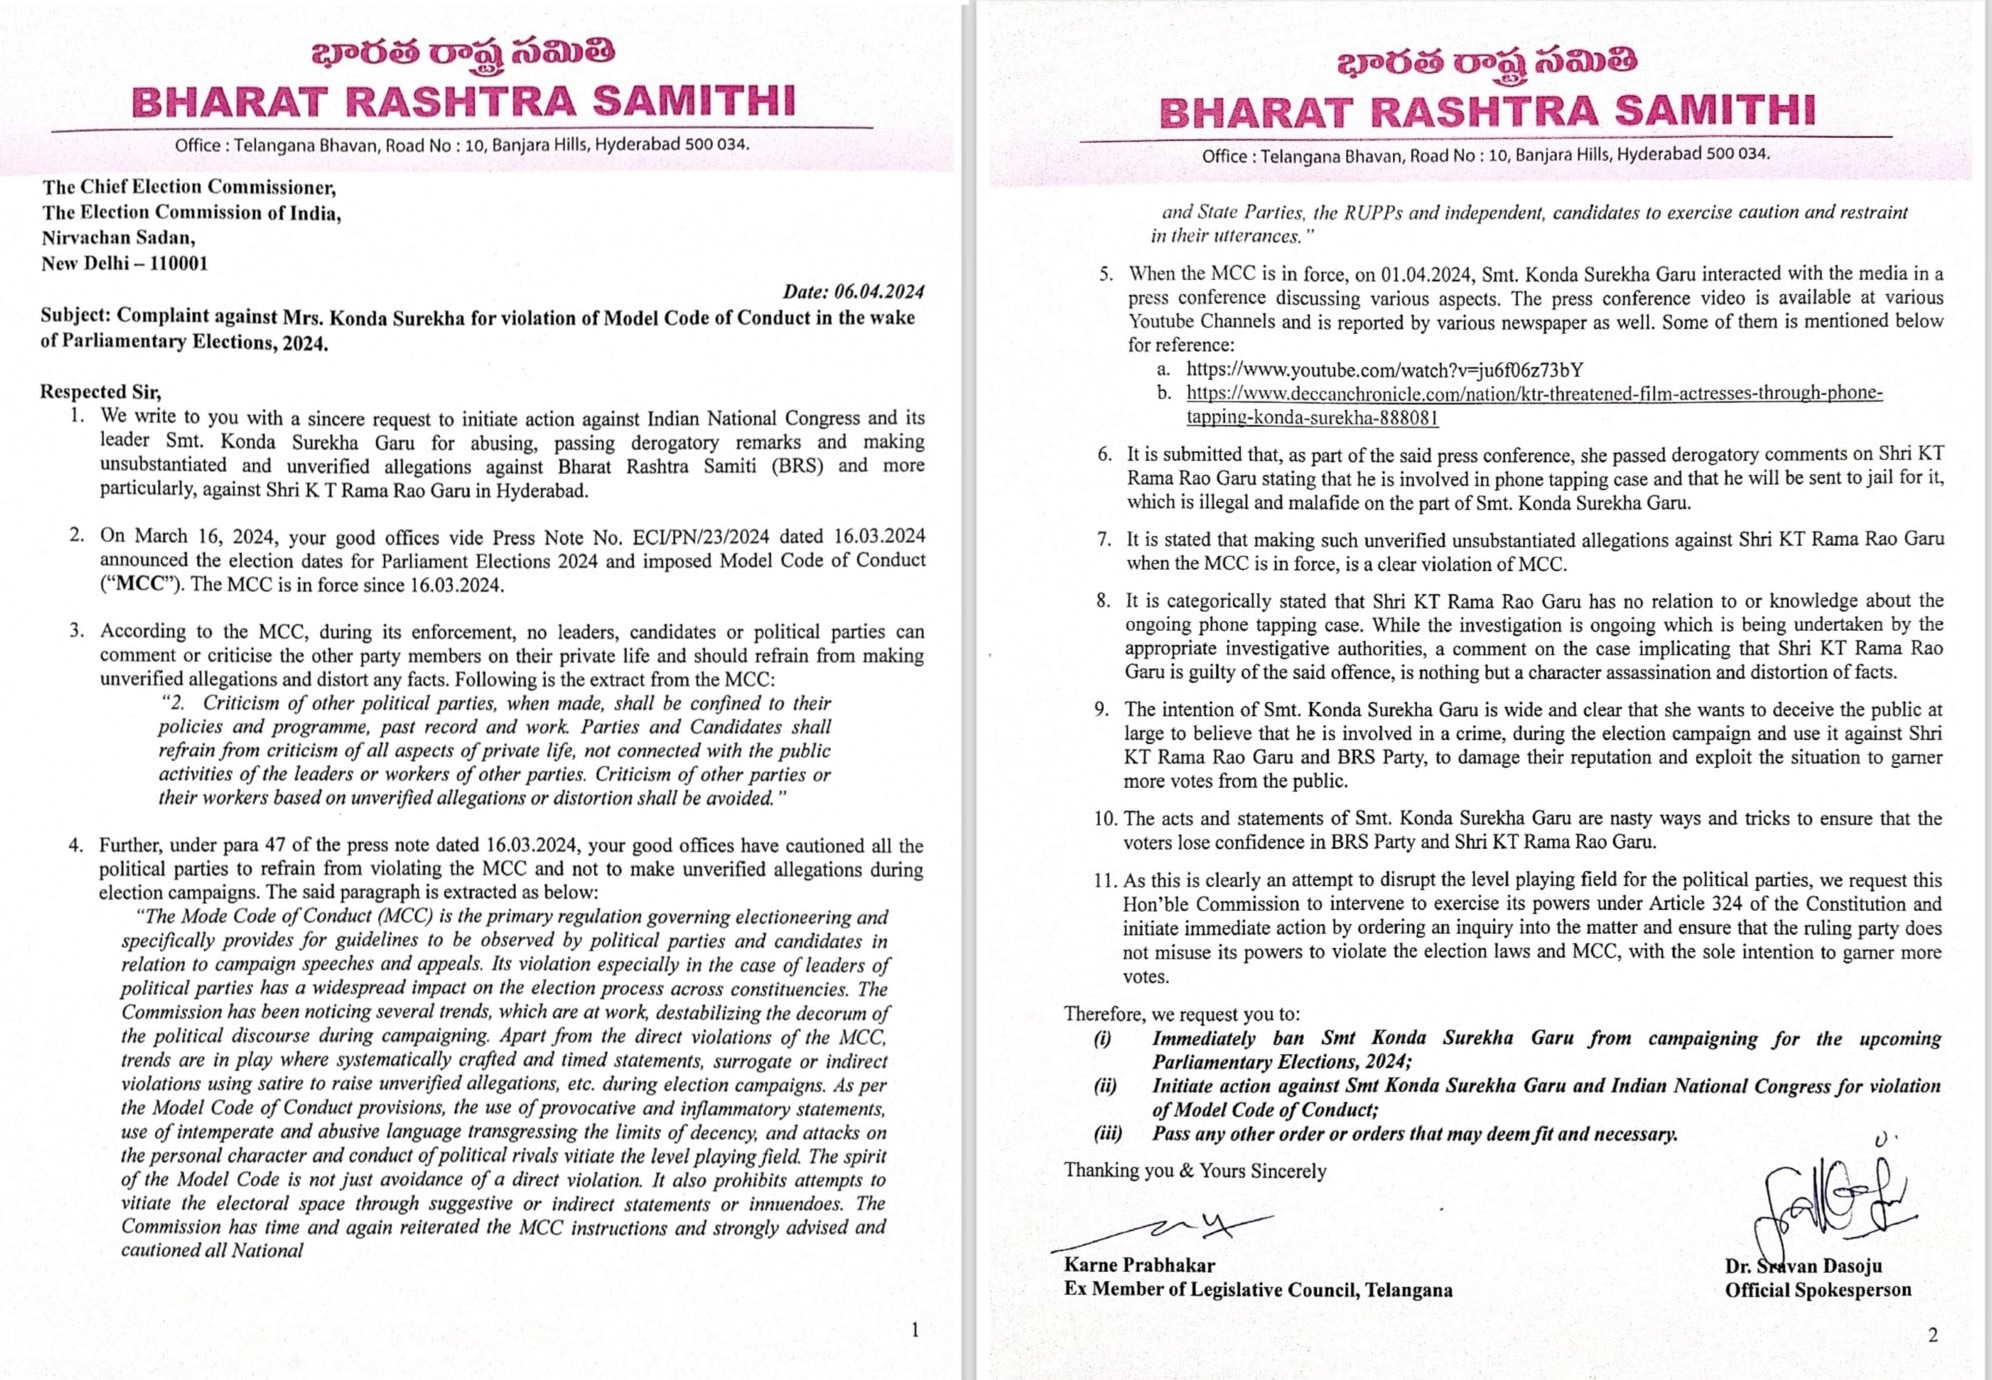 BRS Lodges Complaint: రాహుల్ గాంధీ, కొండా సురేఖపై ఈసీకి ఫిర్యాదు చేసిన బీఆర్ఎస్